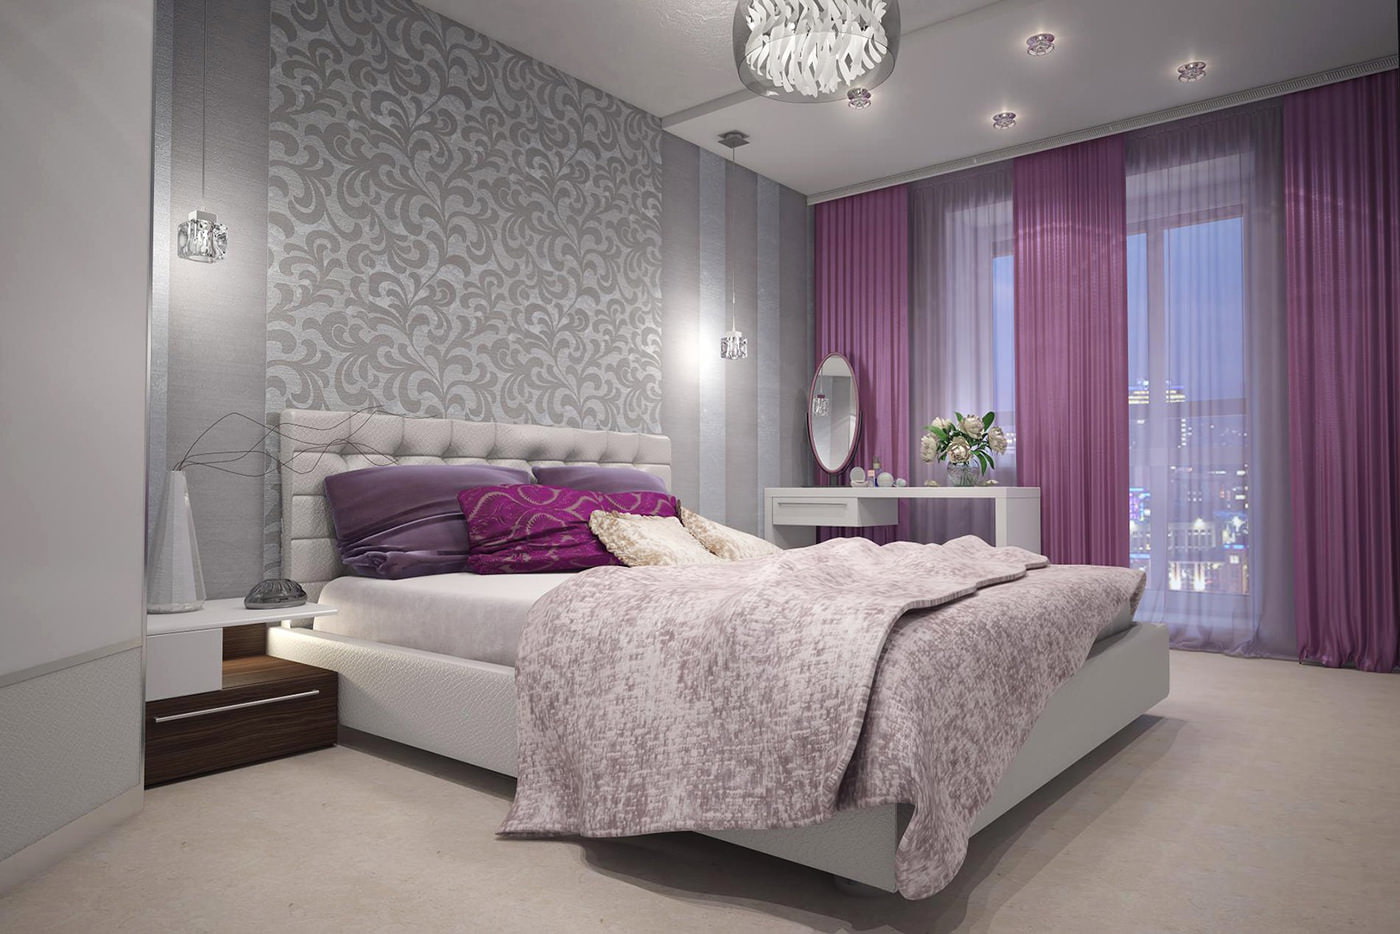 ผ้าม่านสีม่วงในการออกแบบห้องนอนพร้อมวอลเปเปอร์สีเทา